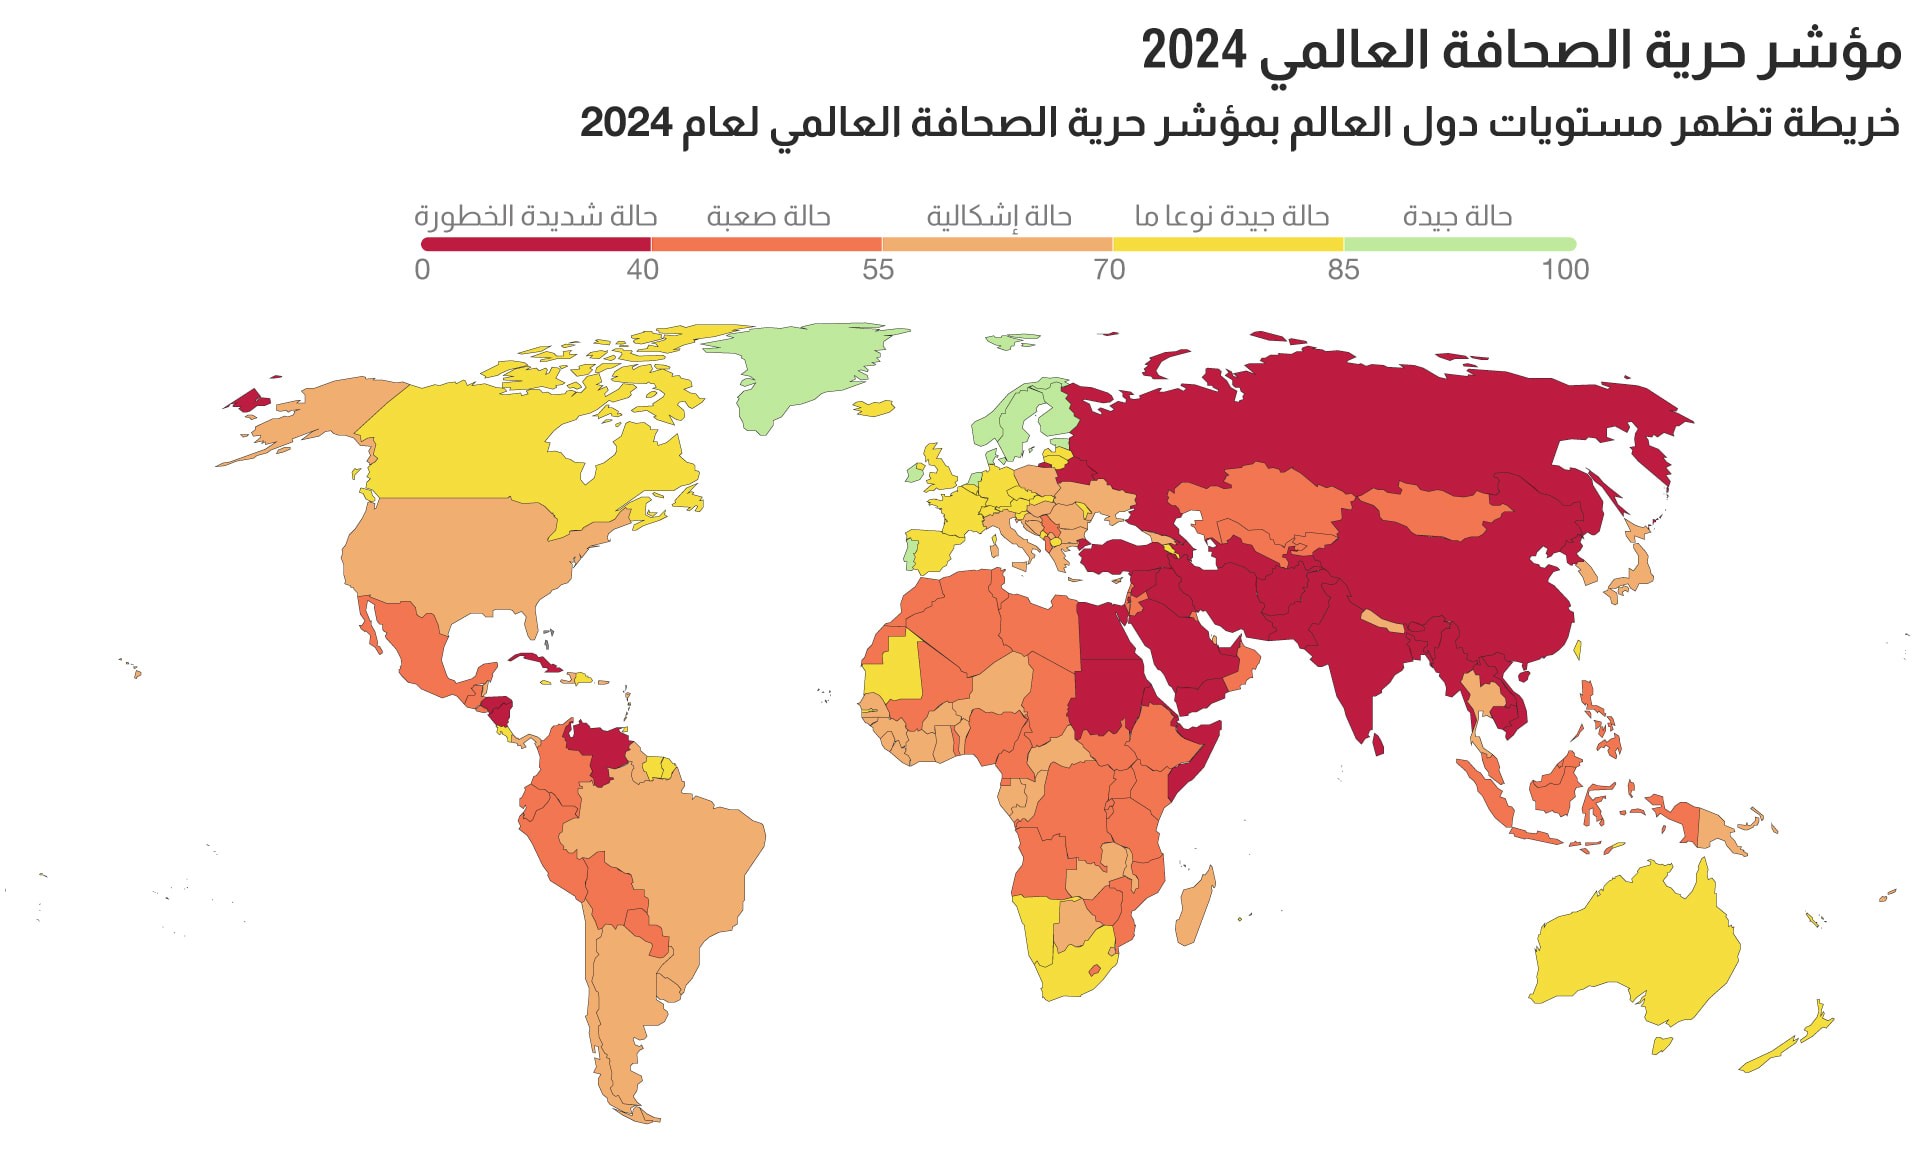 اليمن في ذيل قائمة مؤشر حرية الصحافة عربيًا وعالميا لعام 2024